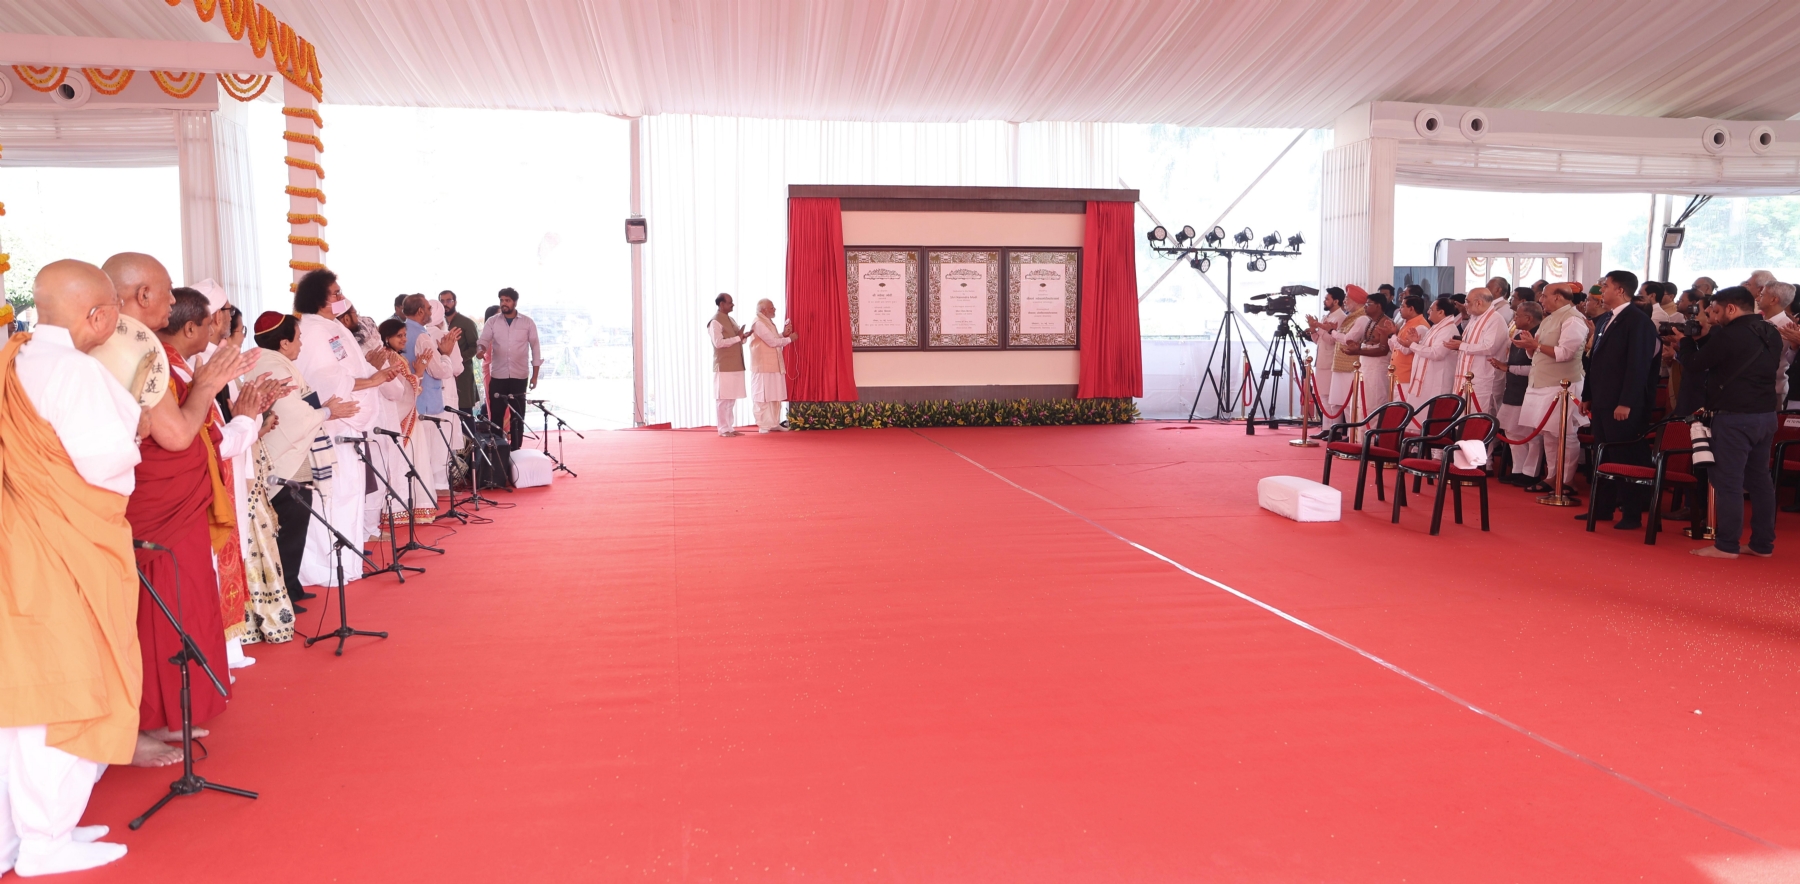 प्रधानमंत्री नरेन्द्र मोदी ने नए संसद भवन के उद्घाटन के अवसर पर तमिलनाडु के अधीनम संतों ने प्रधानमंत्री को सौंपा सेंगोल कर पूरे विधि-विधान के साथ 